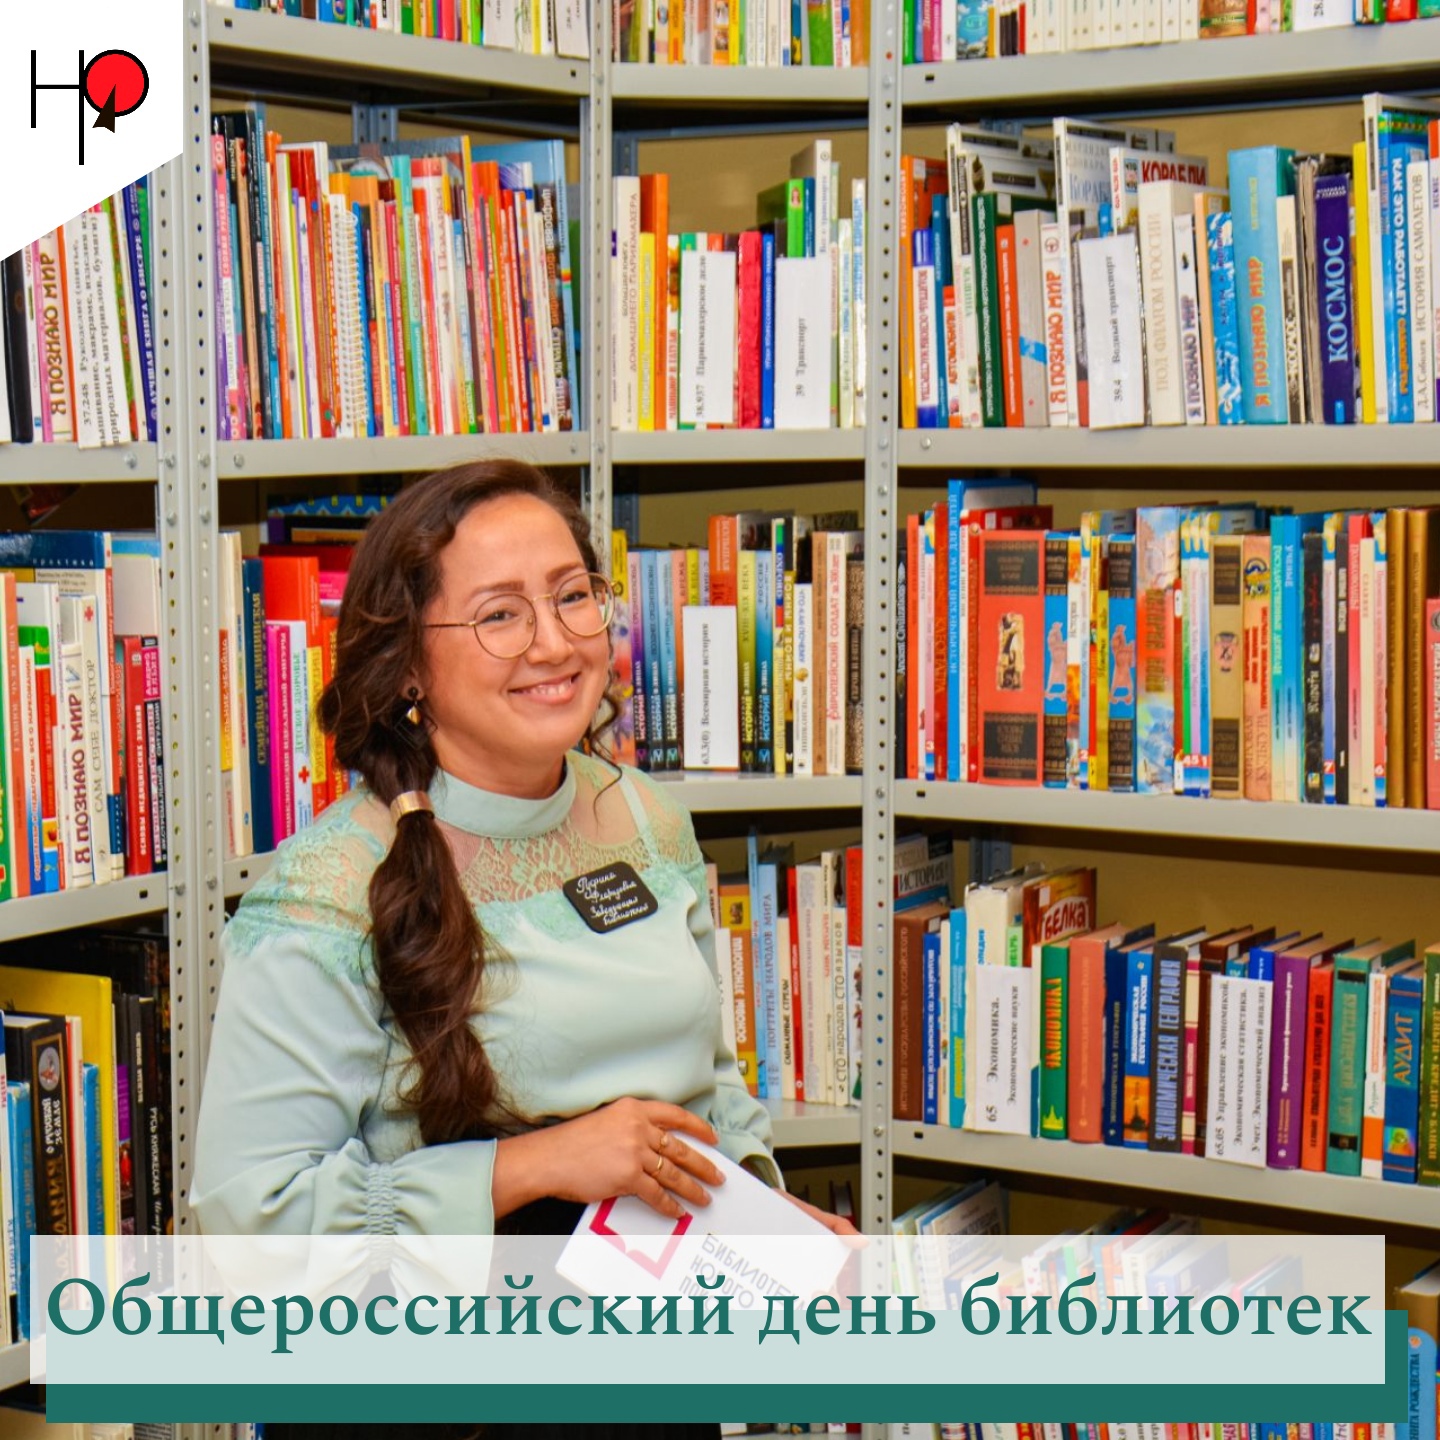 27 мая - Всероссийский день библиотек.